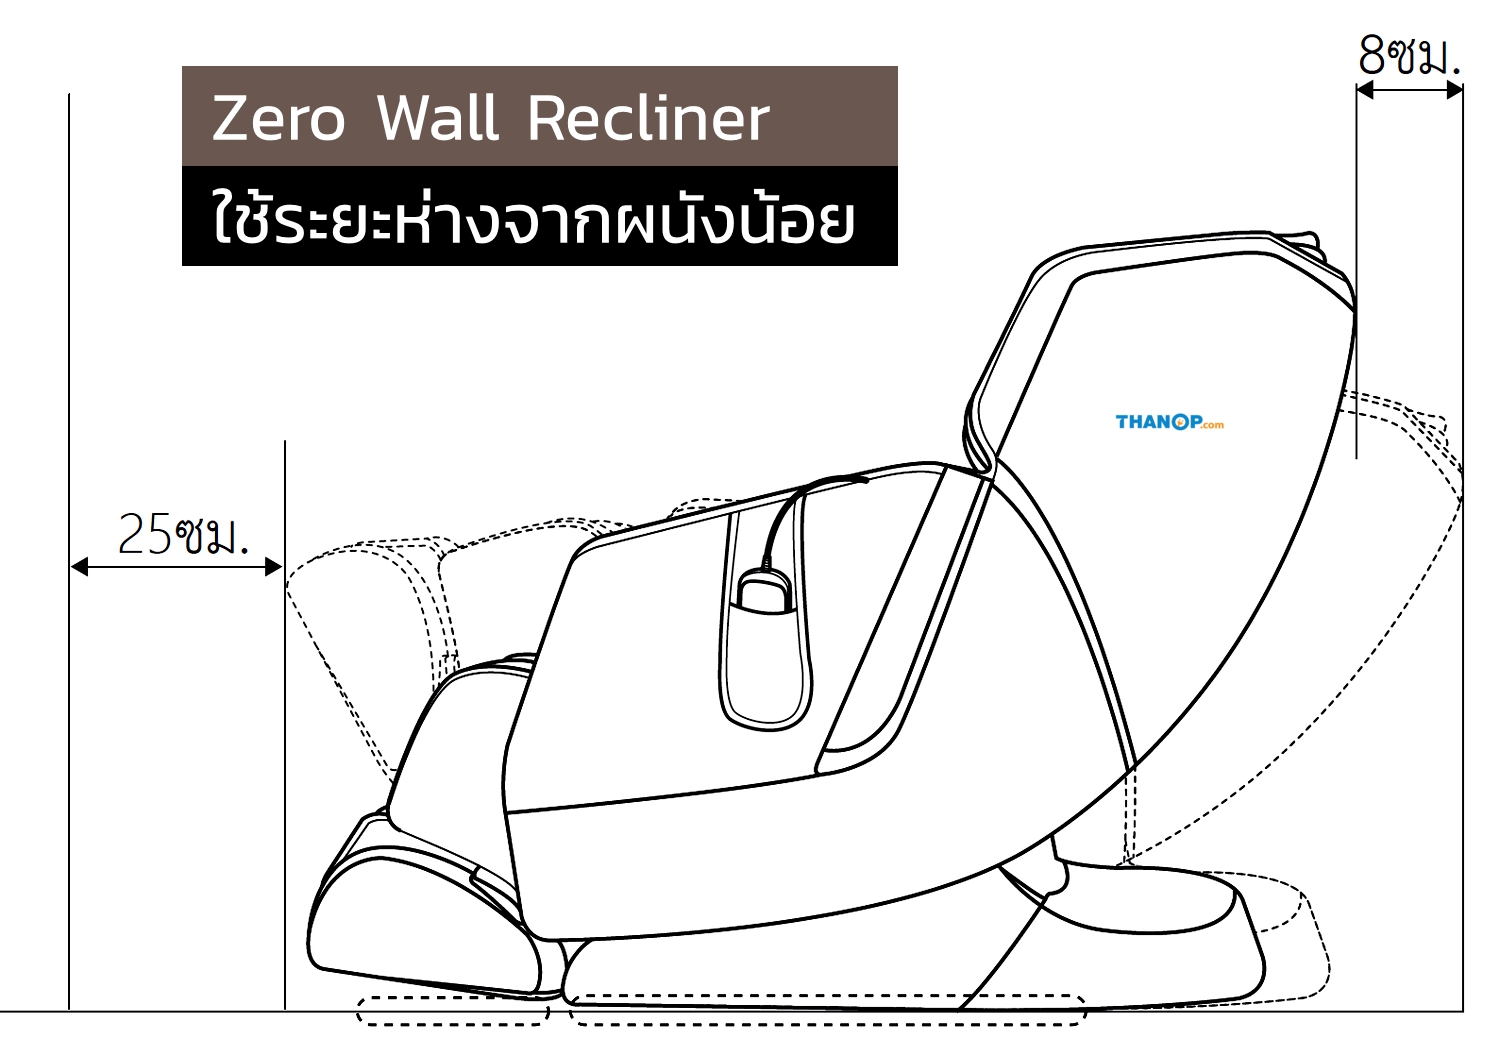 rester-alpha-ec3209f-feature-zero-wall-recliner